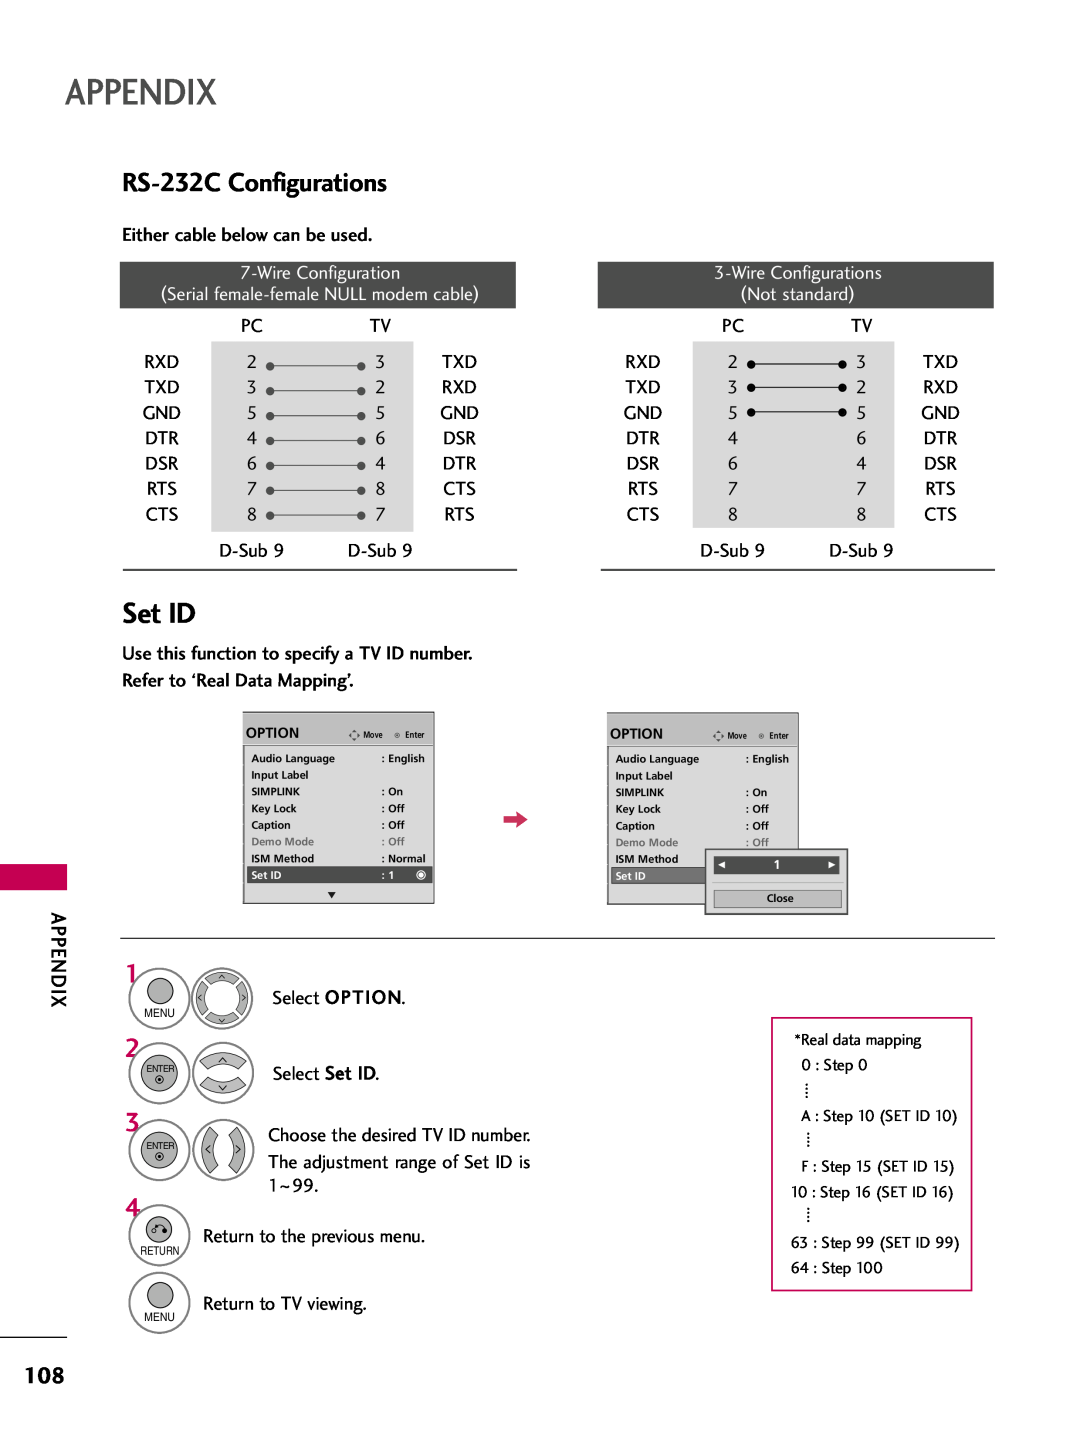 LG Electronics 42PQ12, 50PQ12 owner manual RS-232C Configurations, Appendix, Set ID 